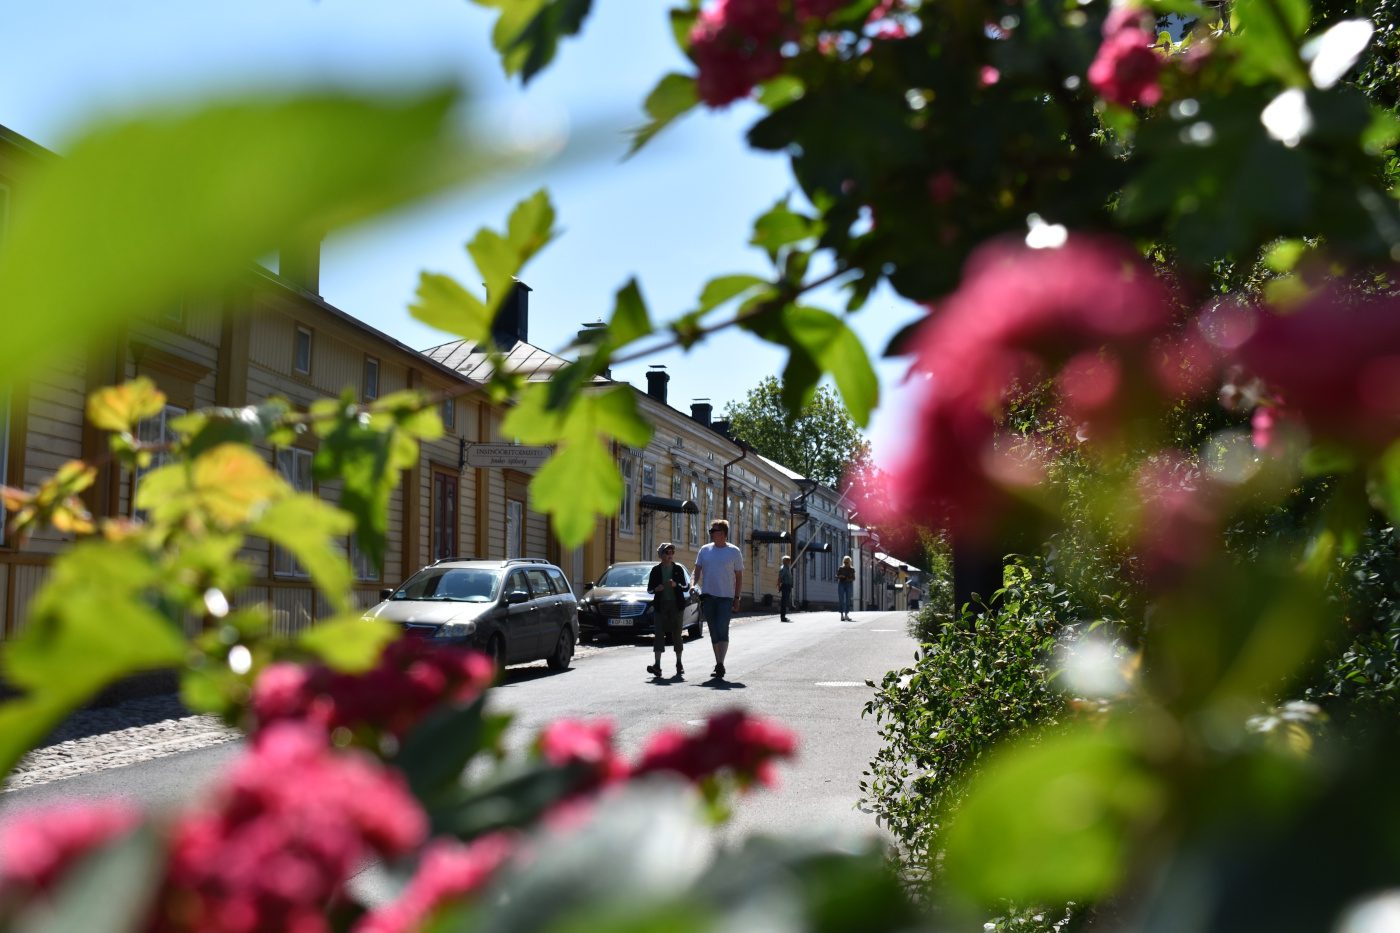 Ihmisiä kävelemässä Naantalin Vanhassakaupungissa kukkien kukkiessa kauniisti.